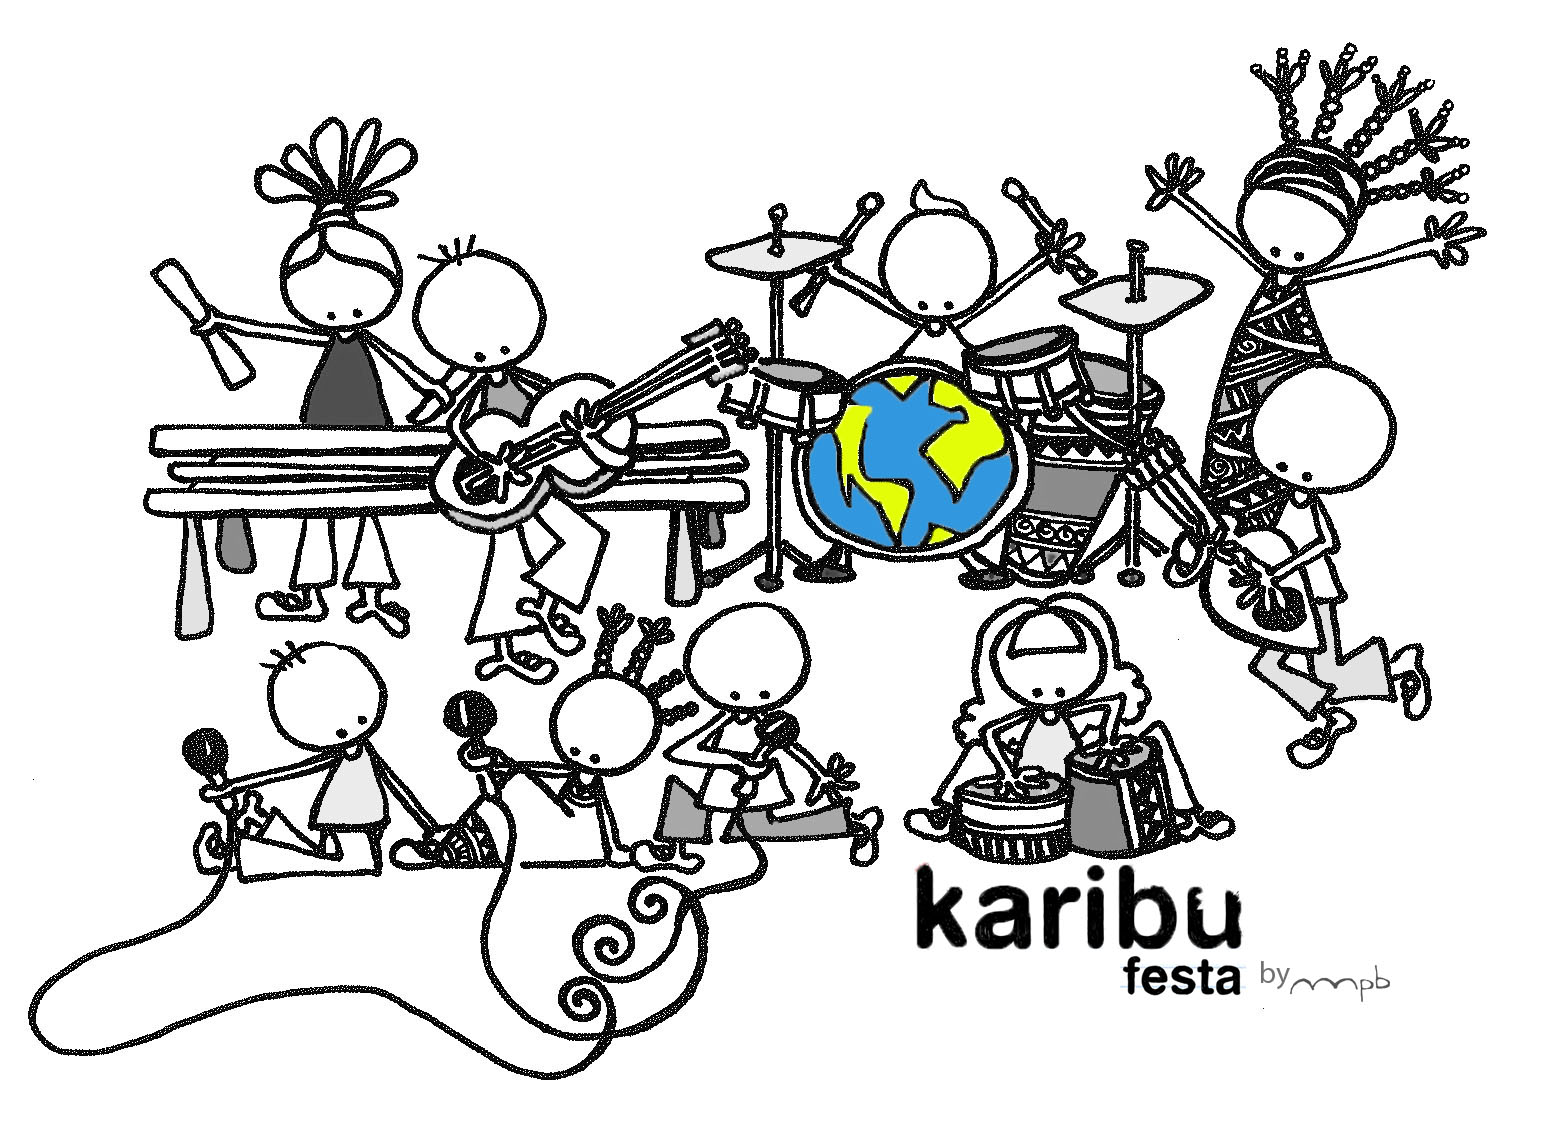 Ilustración "Karibu festa", by muxote potolo bat